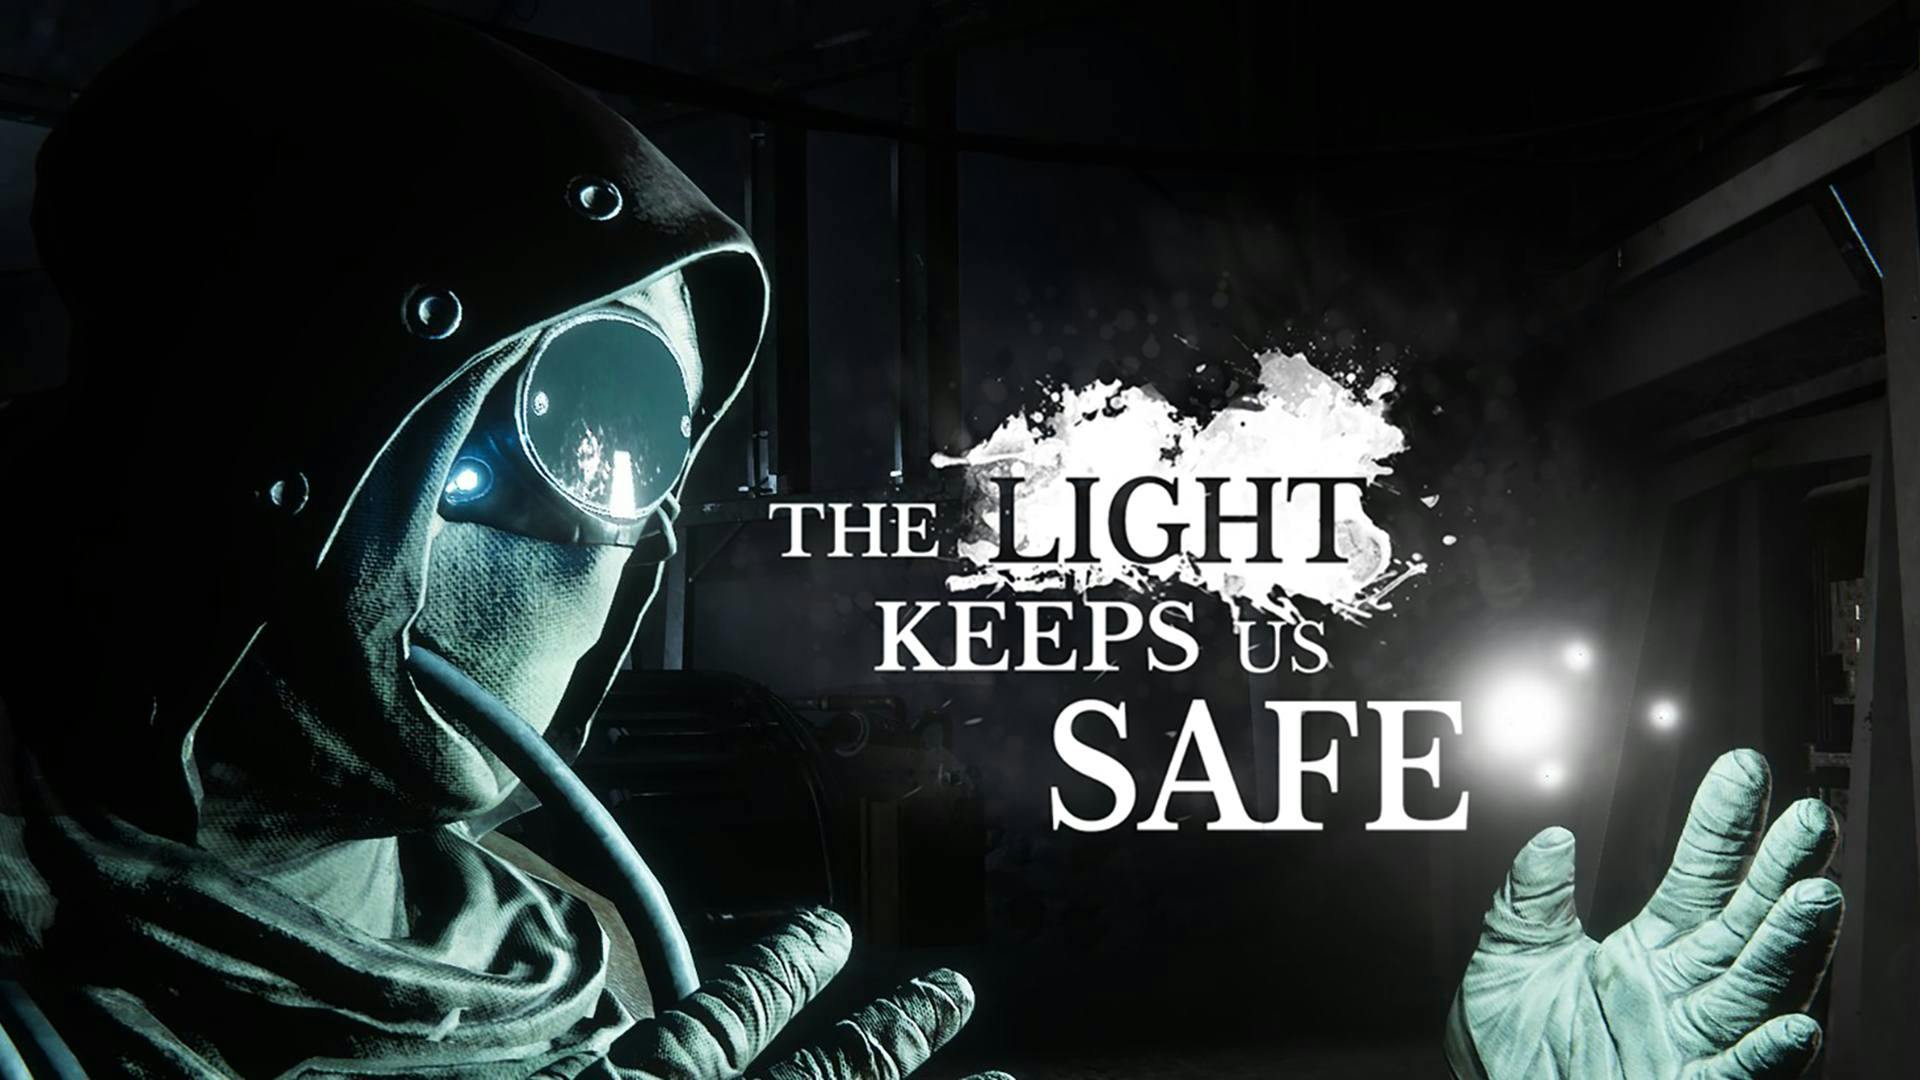 Keeps us safe. The Light keeps us safe. The Light игра. A keeps us safe. The.Light.keeps.us.safe геймплей.